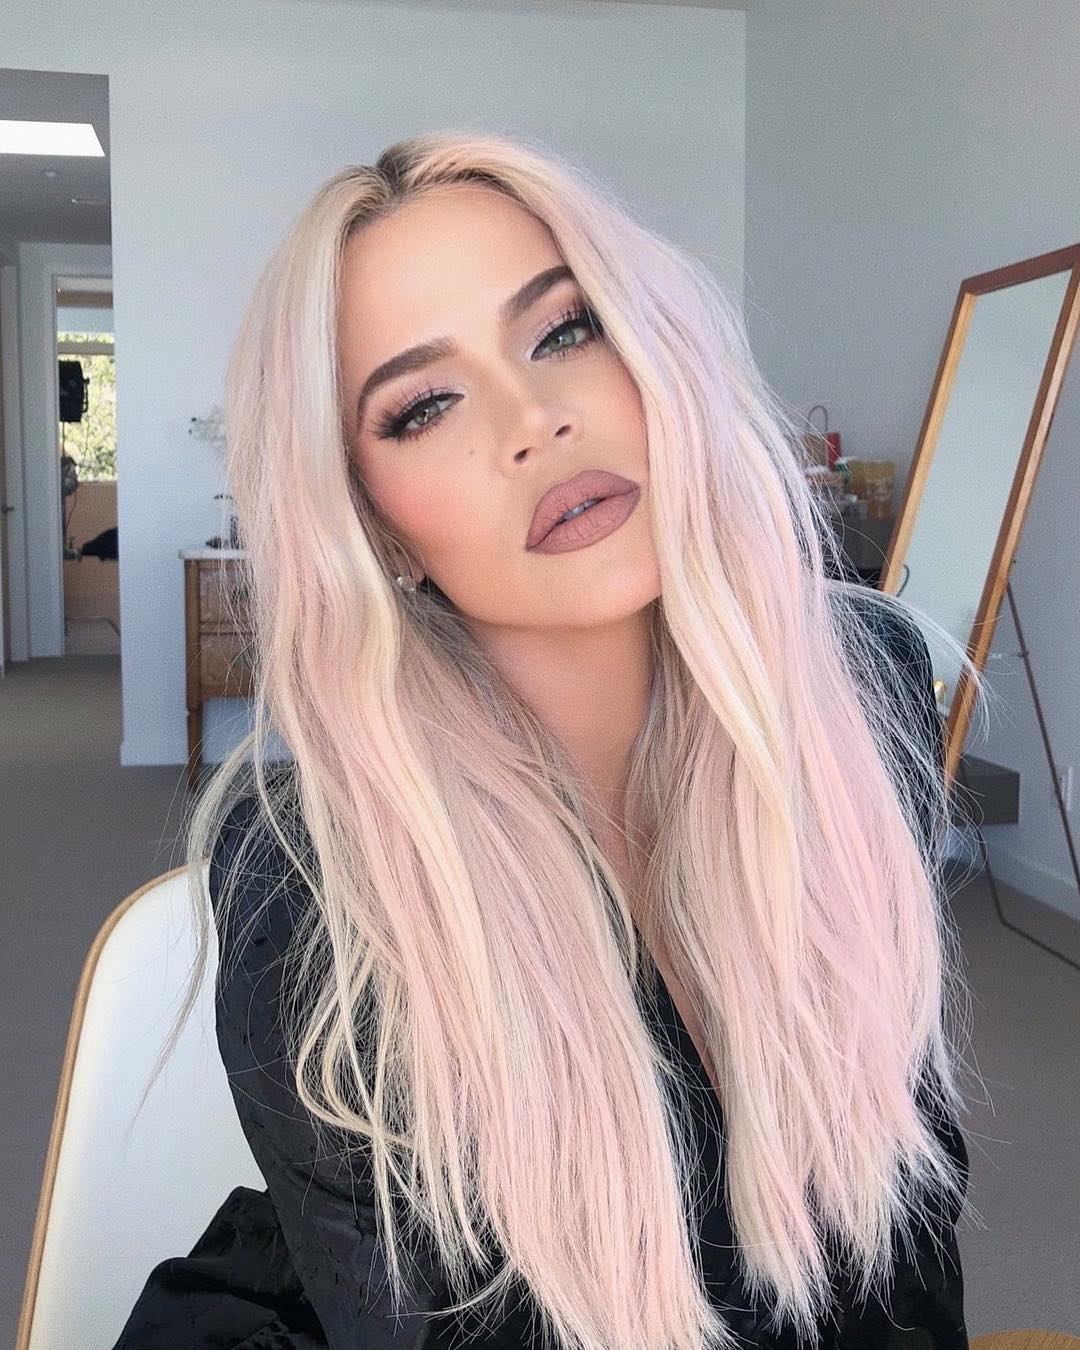 Khloe Kardashian's Pink Hair L'Oreal Paris Color: Details